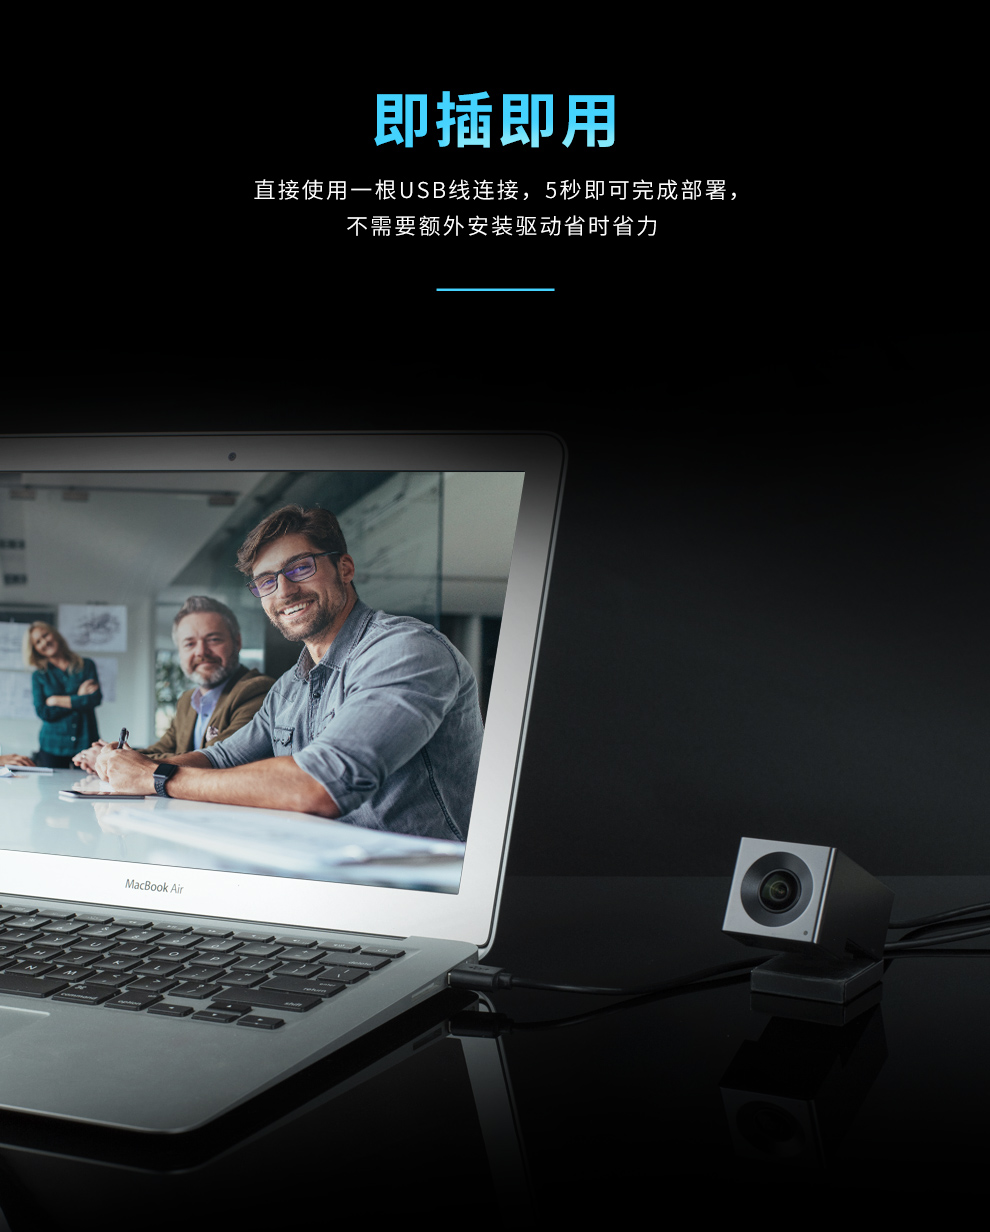 耳目达V20远程视频会议摄像机2K高清无线网络摄像头(图11)